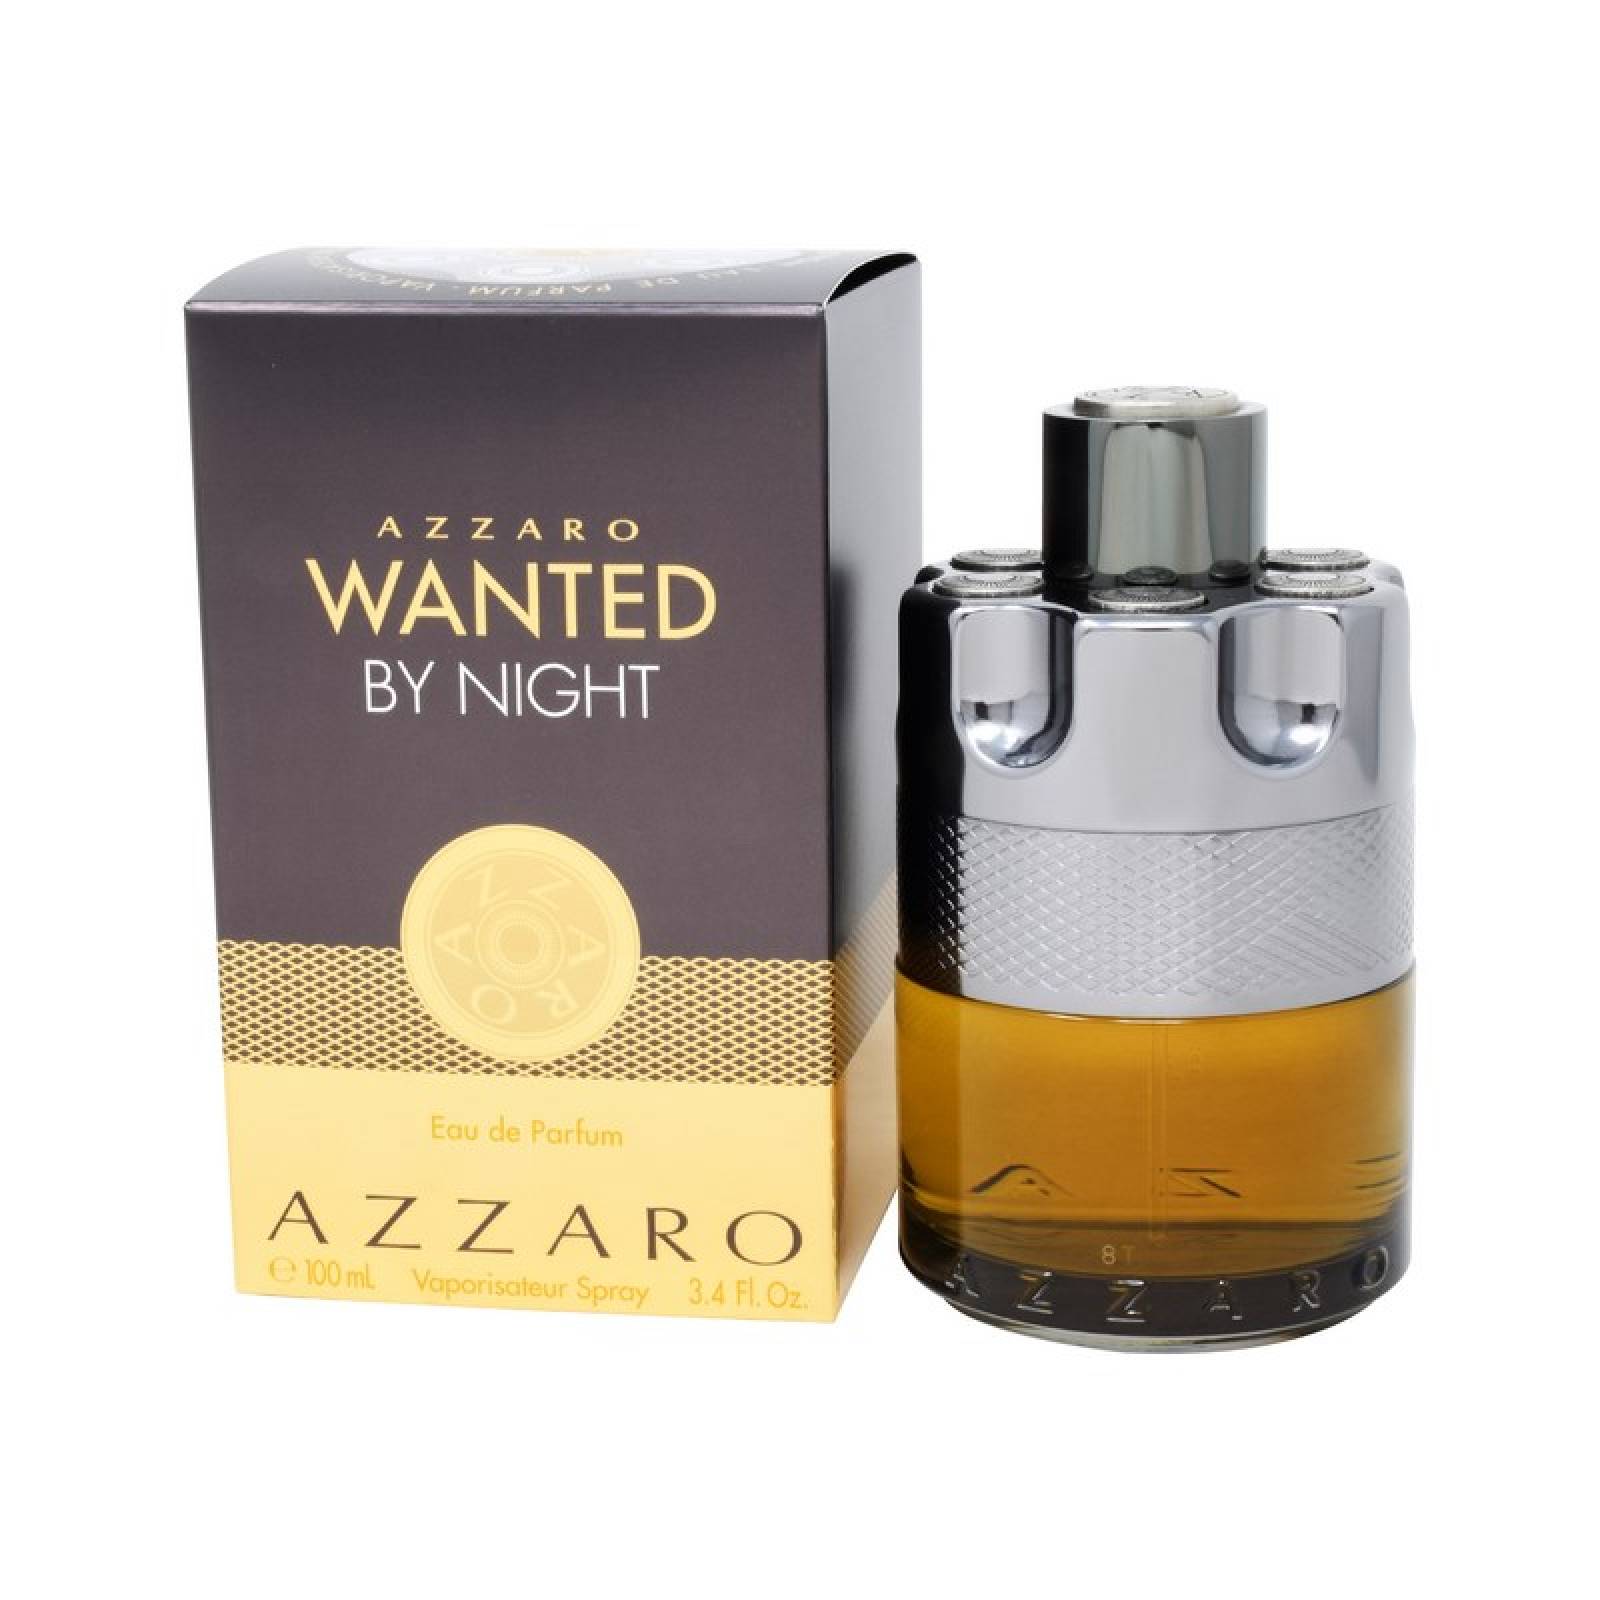 Wanted By Night 100 ml Eau de Parfum de Azzaro